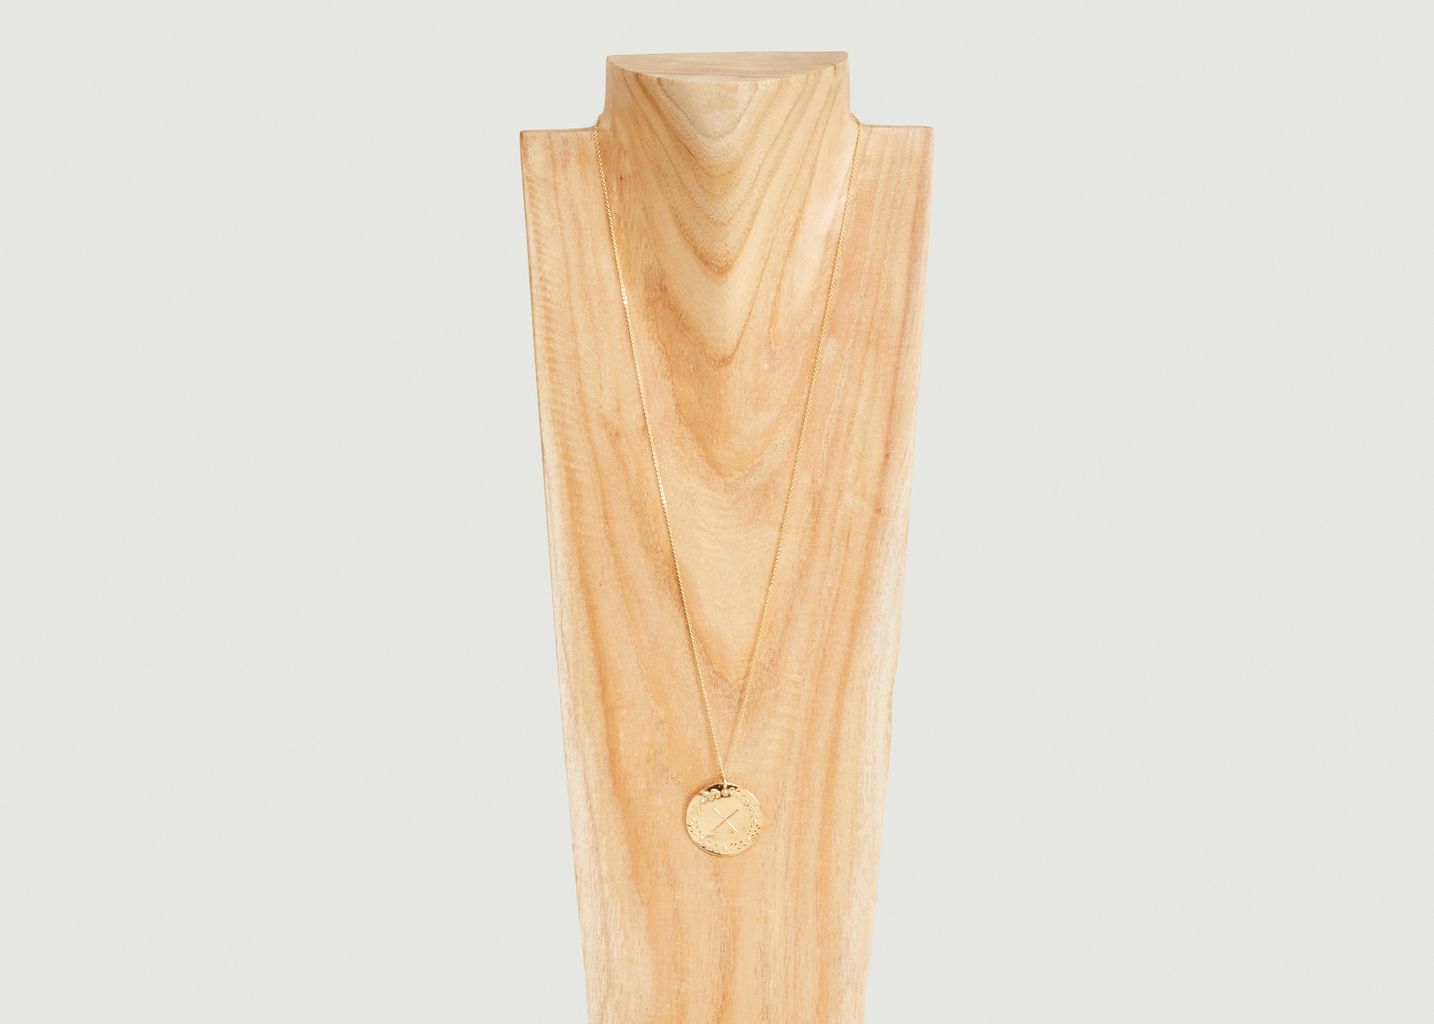 Lauriers vermeil medal fine chain necklace to personalize - Par Coeur